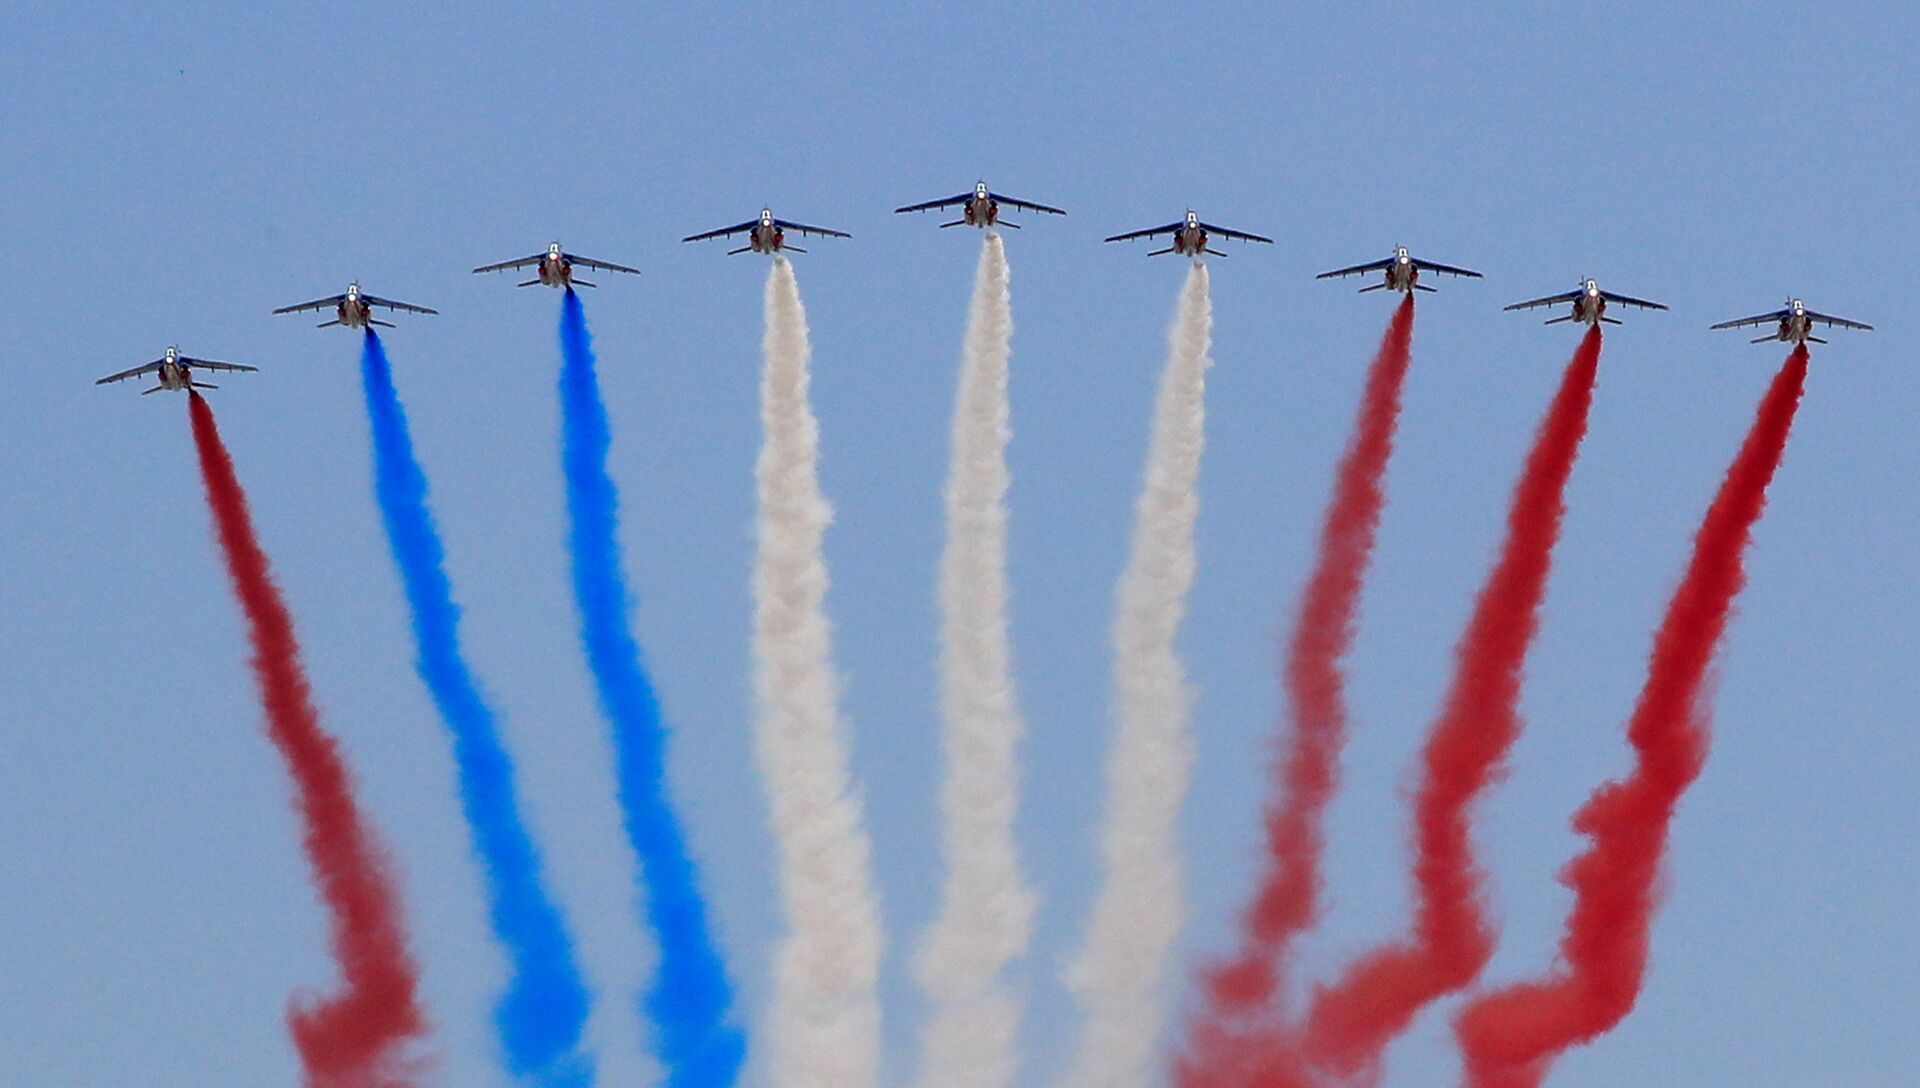 Во франции перепутали флаг. Патруль де Франс пилотажная группа. Самолет военный выпускает разноцветный дым. Макрон изменил цвет флага. Patrouille de France на закате.